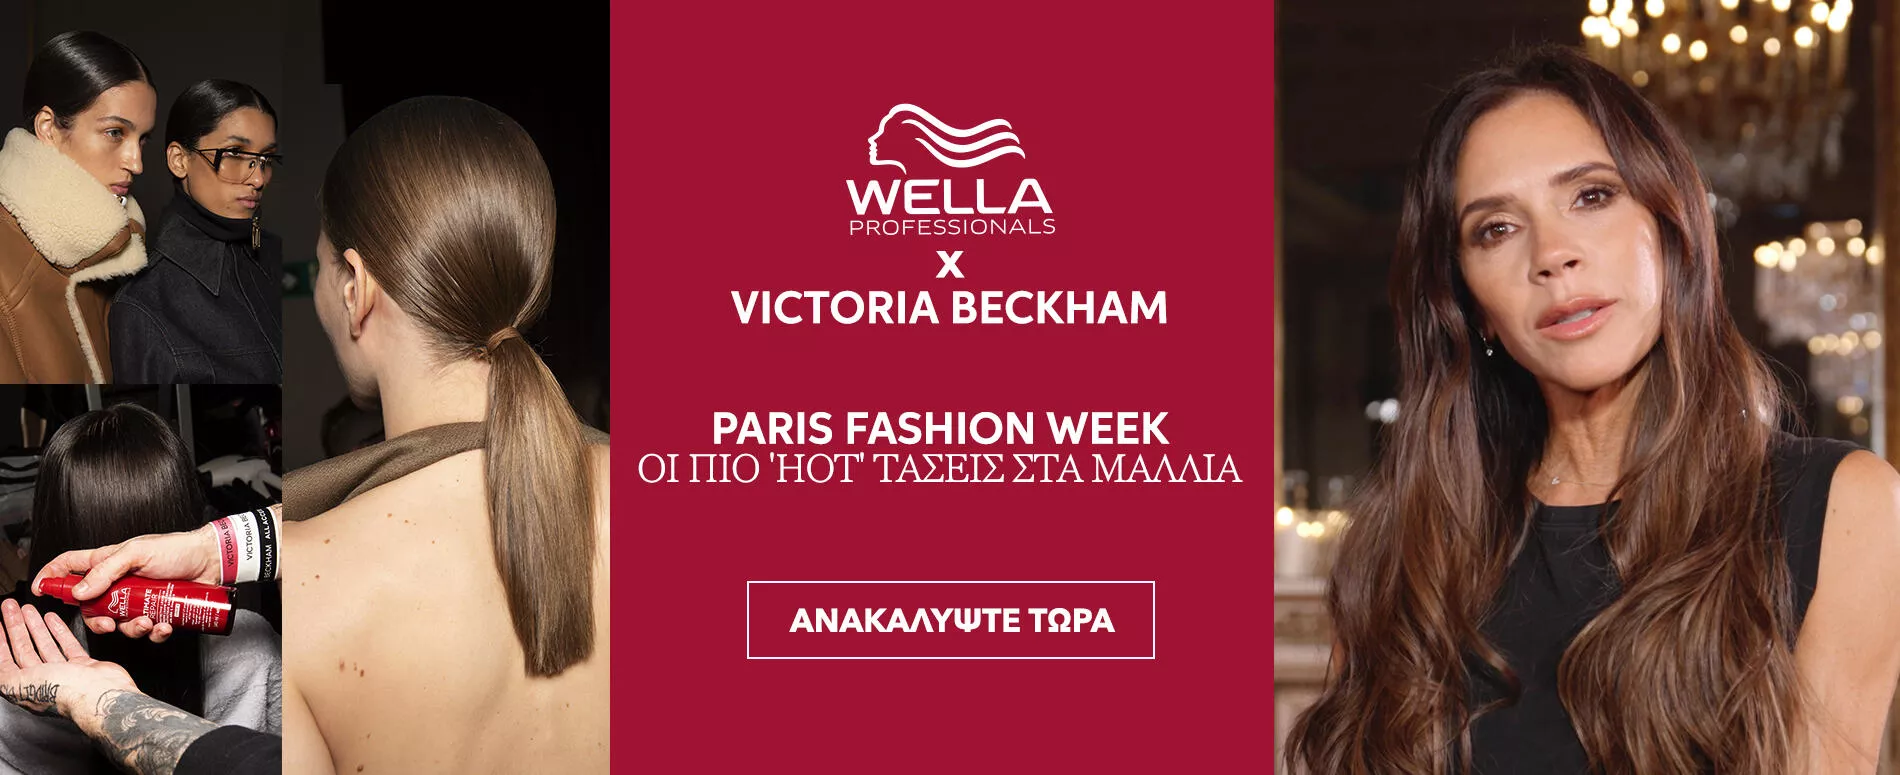 Βanner Victoria Beckham x Wella Τάσεις στα Μαλλιά με κουμπί 'ΑΝΑΚΑΛΥΨΤΕ'